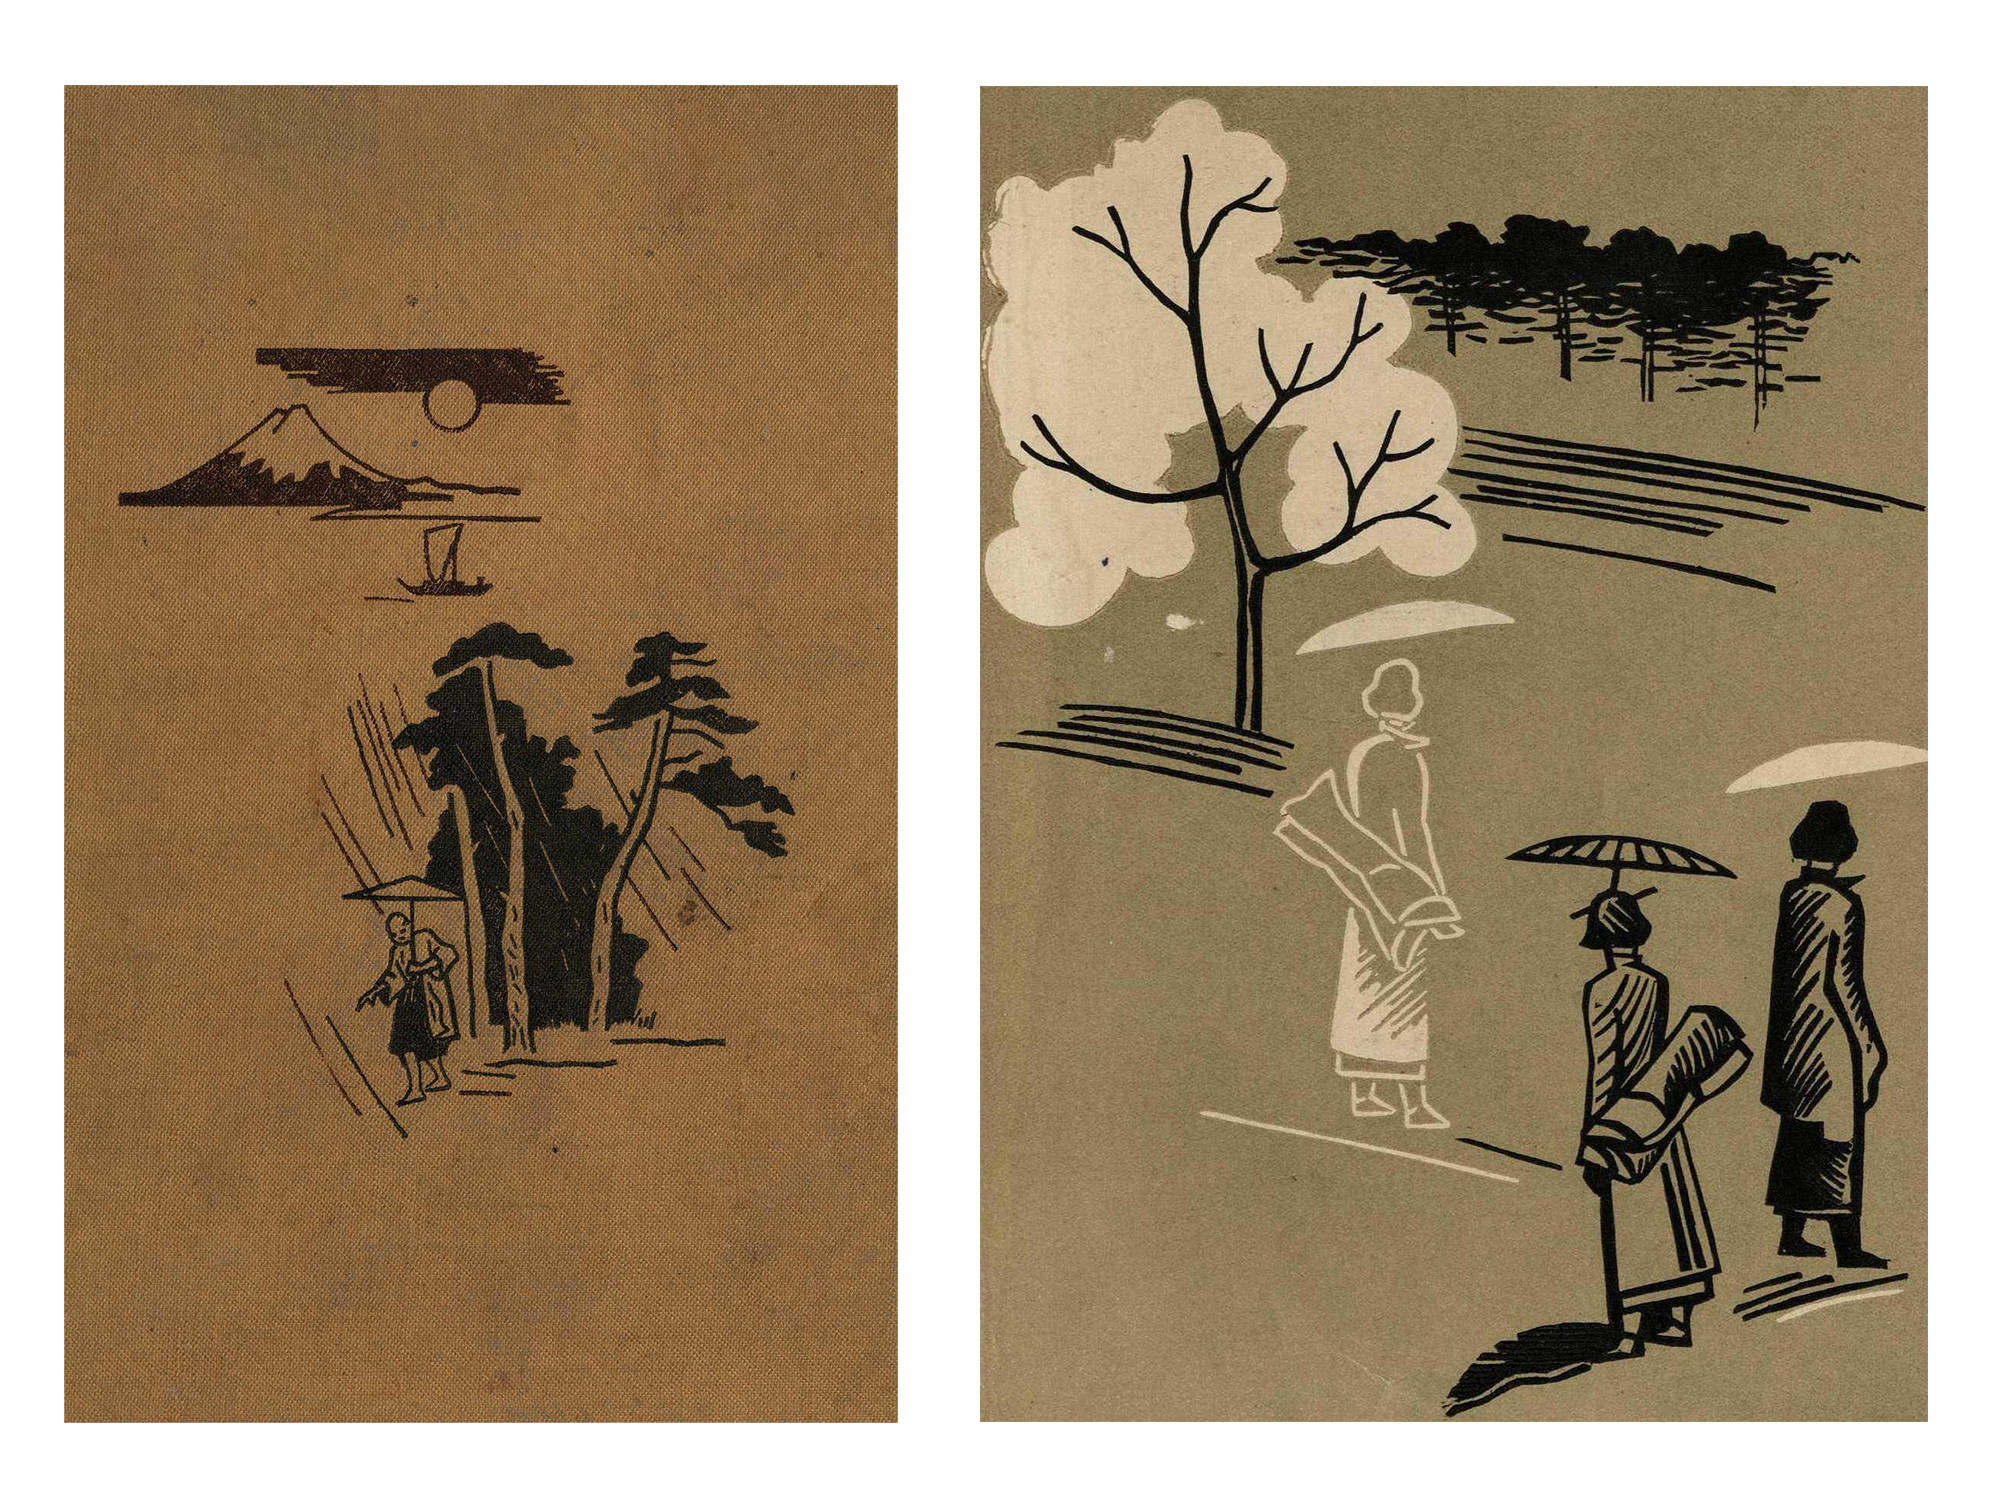 Обложка и форзац книги Б. П. Денике «Японская цветная гравюра». Источник: «Японская цветная гравюра» (1936).